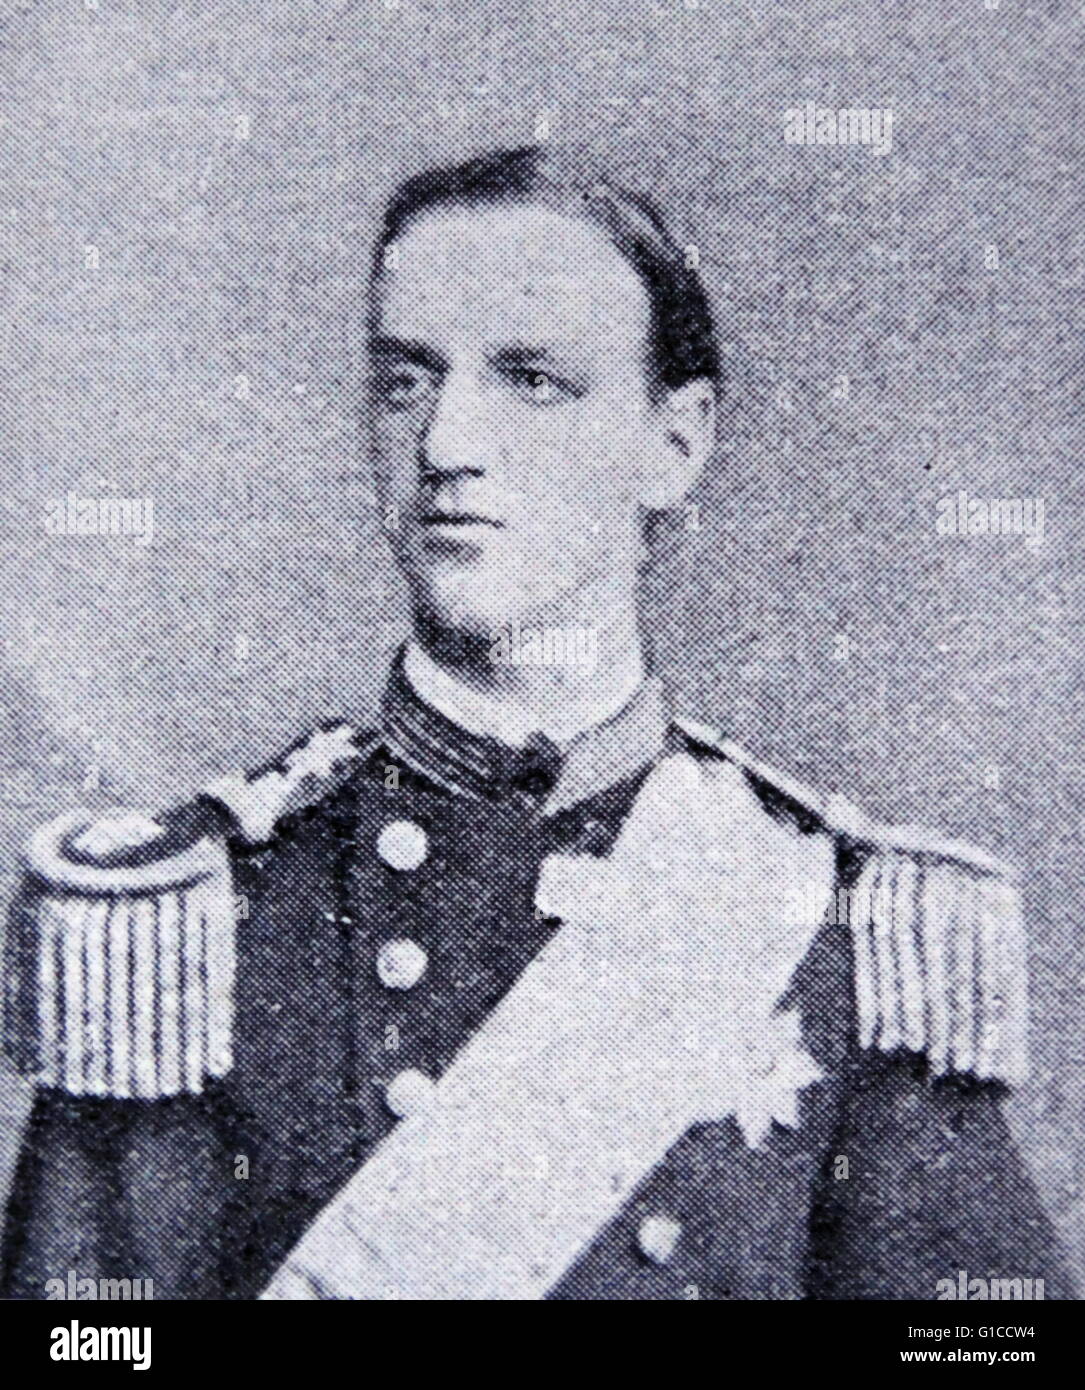 Ritratto di George IO della Grecia (1845-1913) Originariamente un principe danese, George è nato a Copenaghen e sembrava destinato ad una carriera nella Royal Navy danese. Datata del XIX secolo Foto Stock